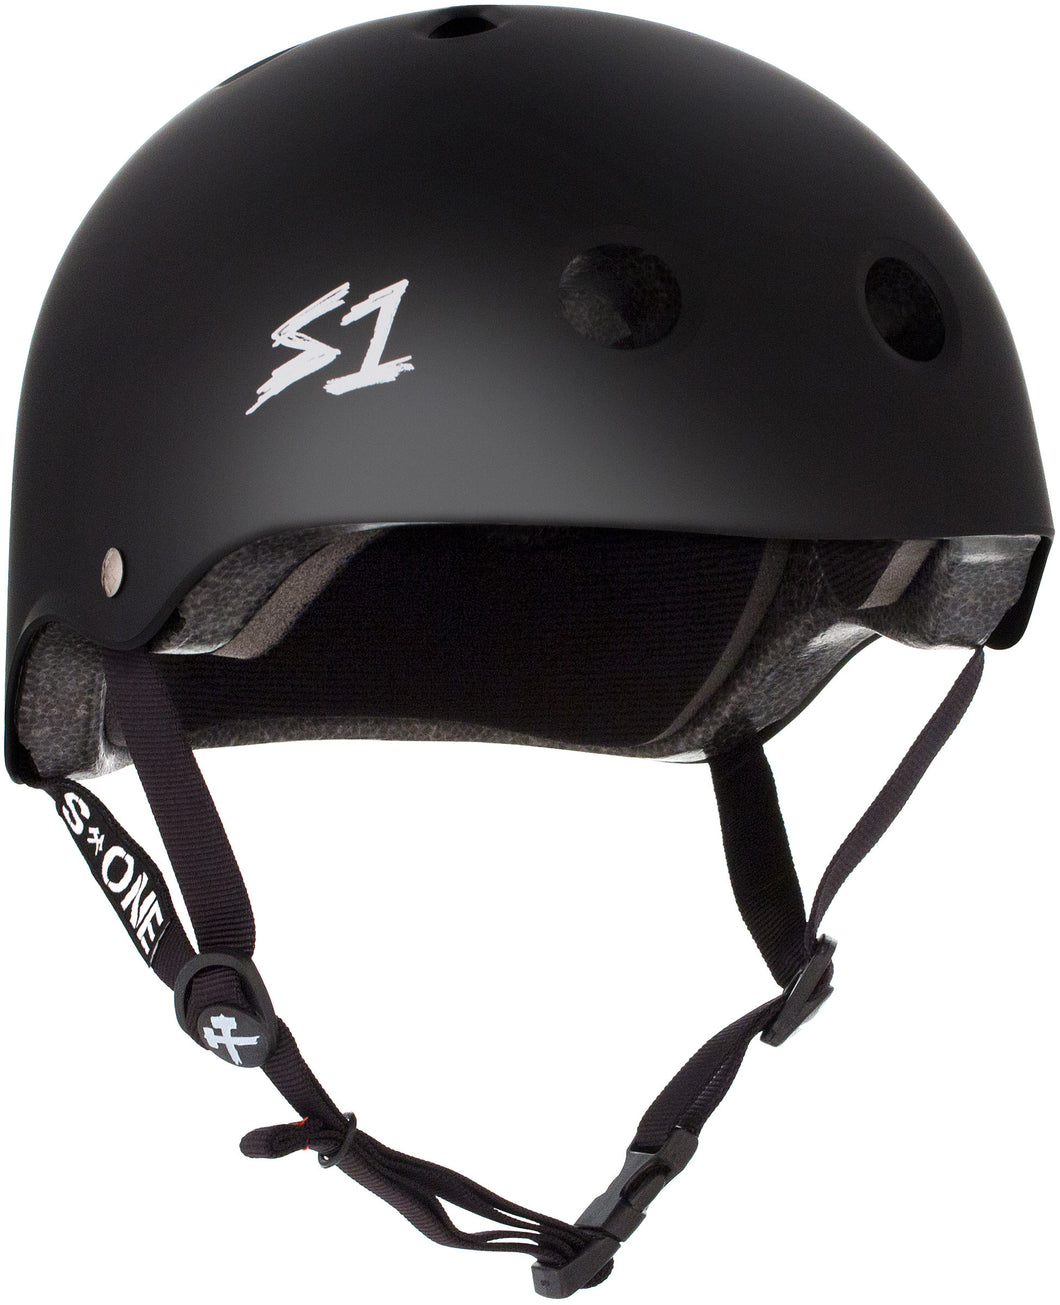 S1 Lifer Helmet - Black Matte w/ White Logo